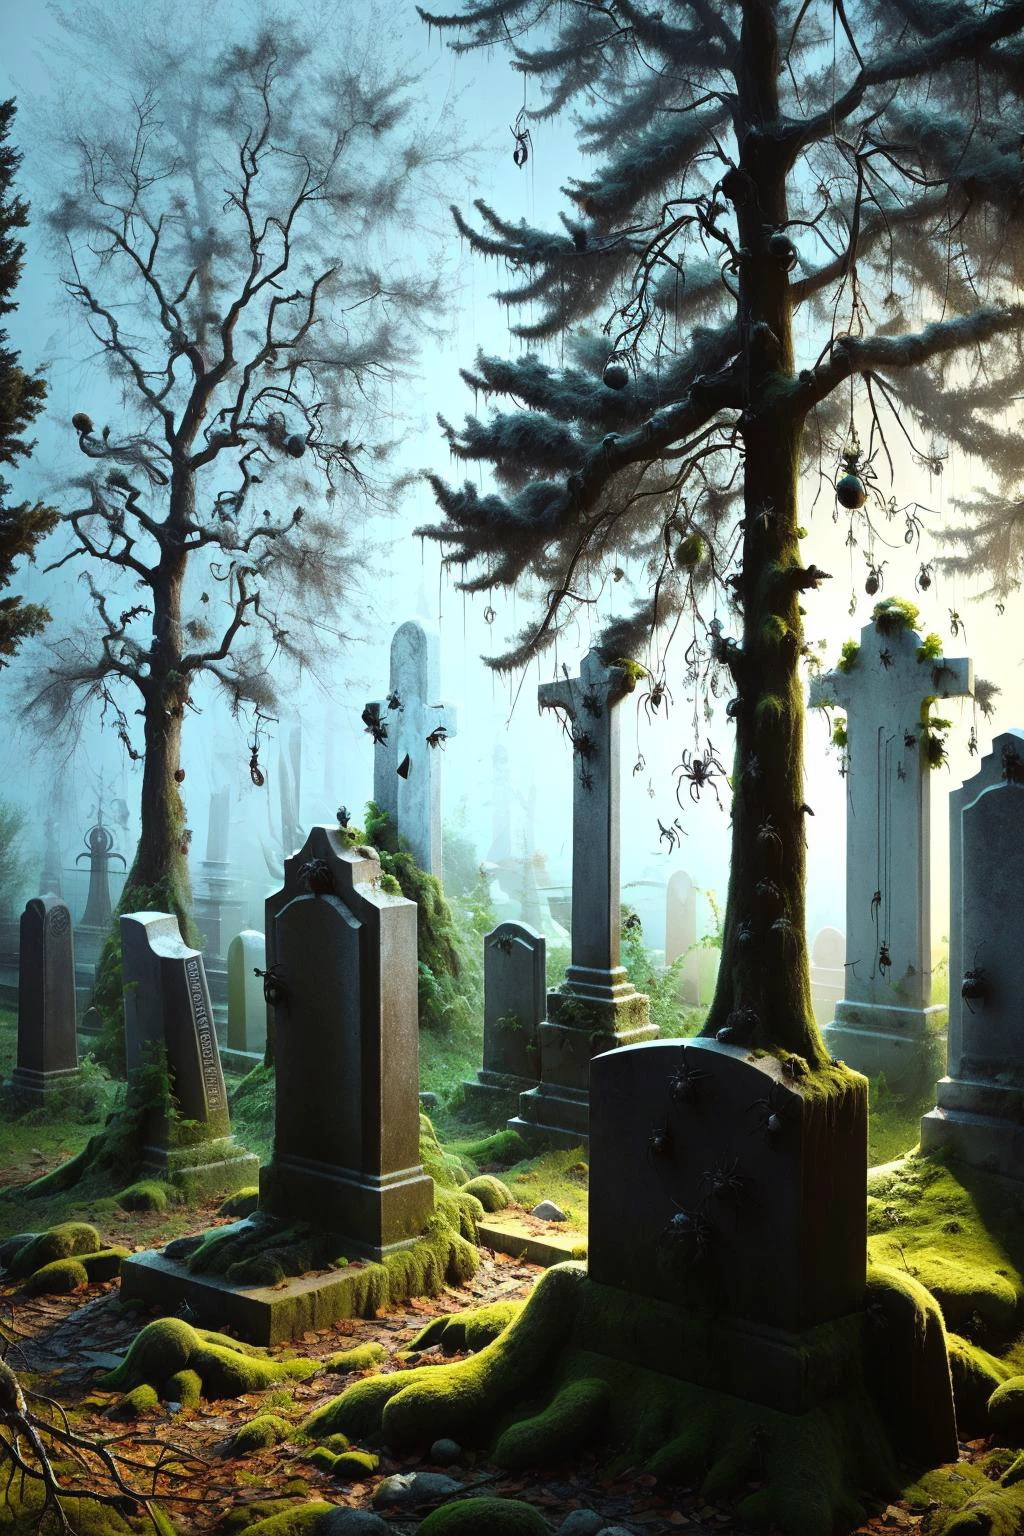 Туманное кладбище ночью, со древними надгробиями и корявыми деревьями, аис-пауки ползают по могилам и свисают с ветвей, создание пугающей и призрачной атмосферы 